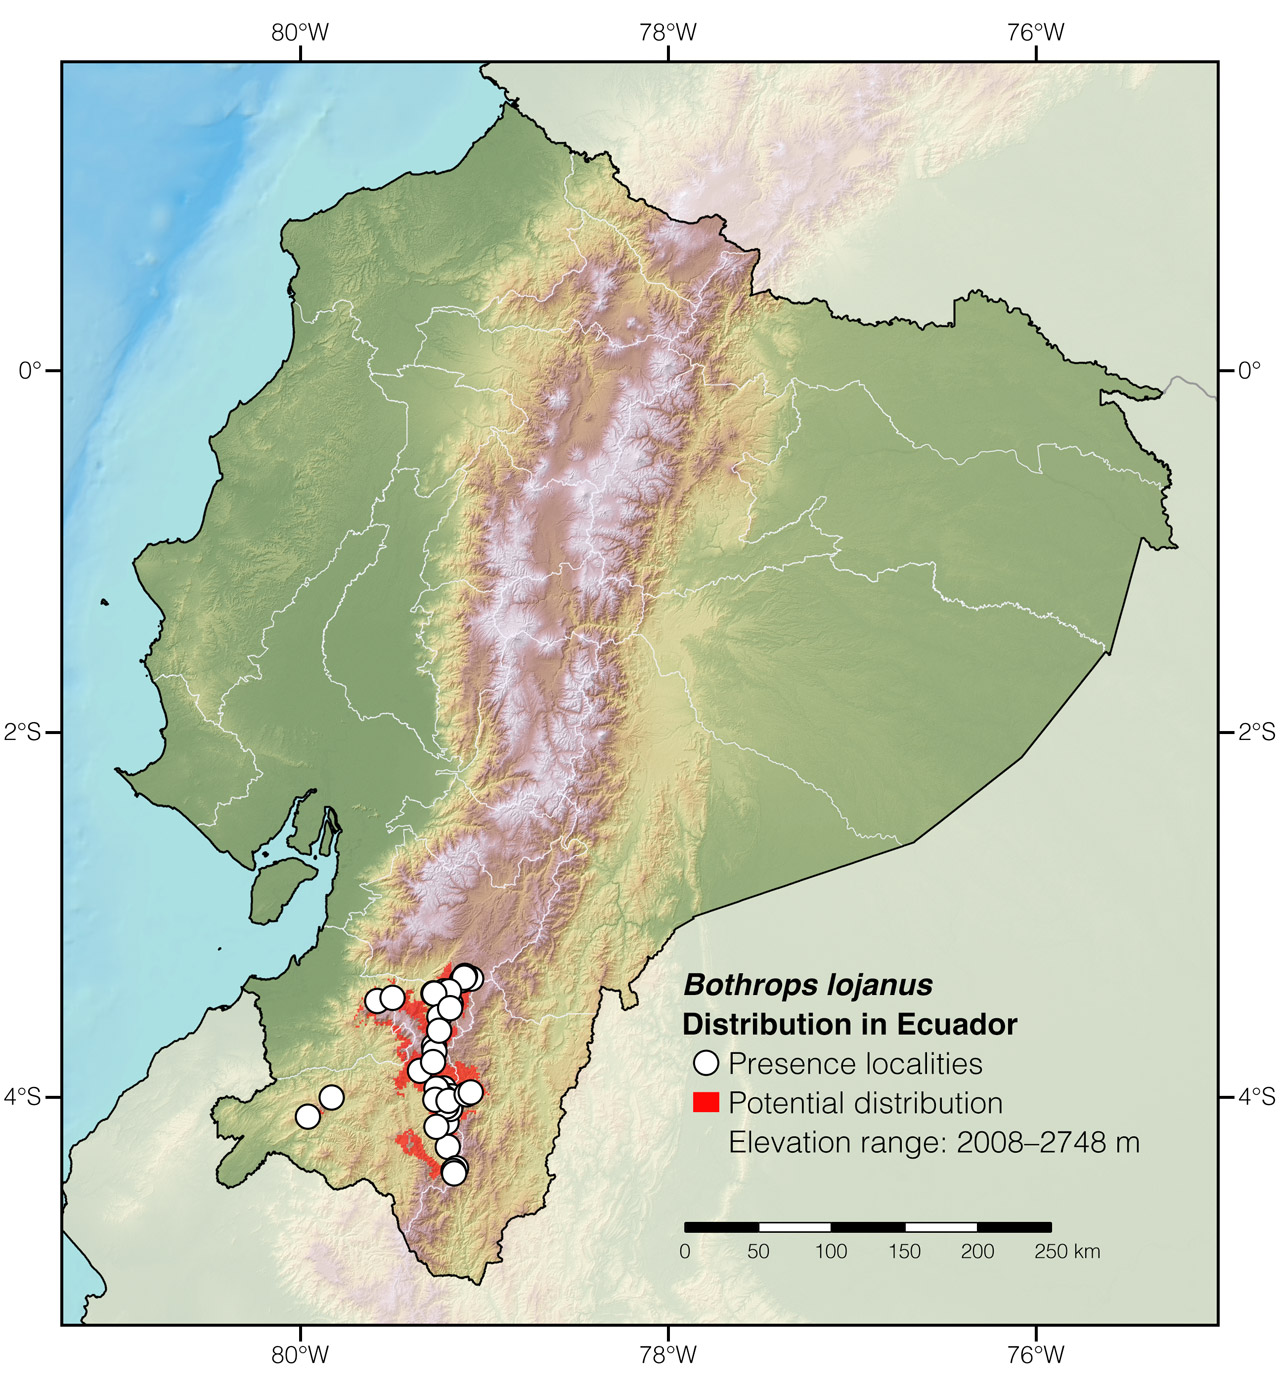 Distribution of Bothrops lojanus in Ecuador